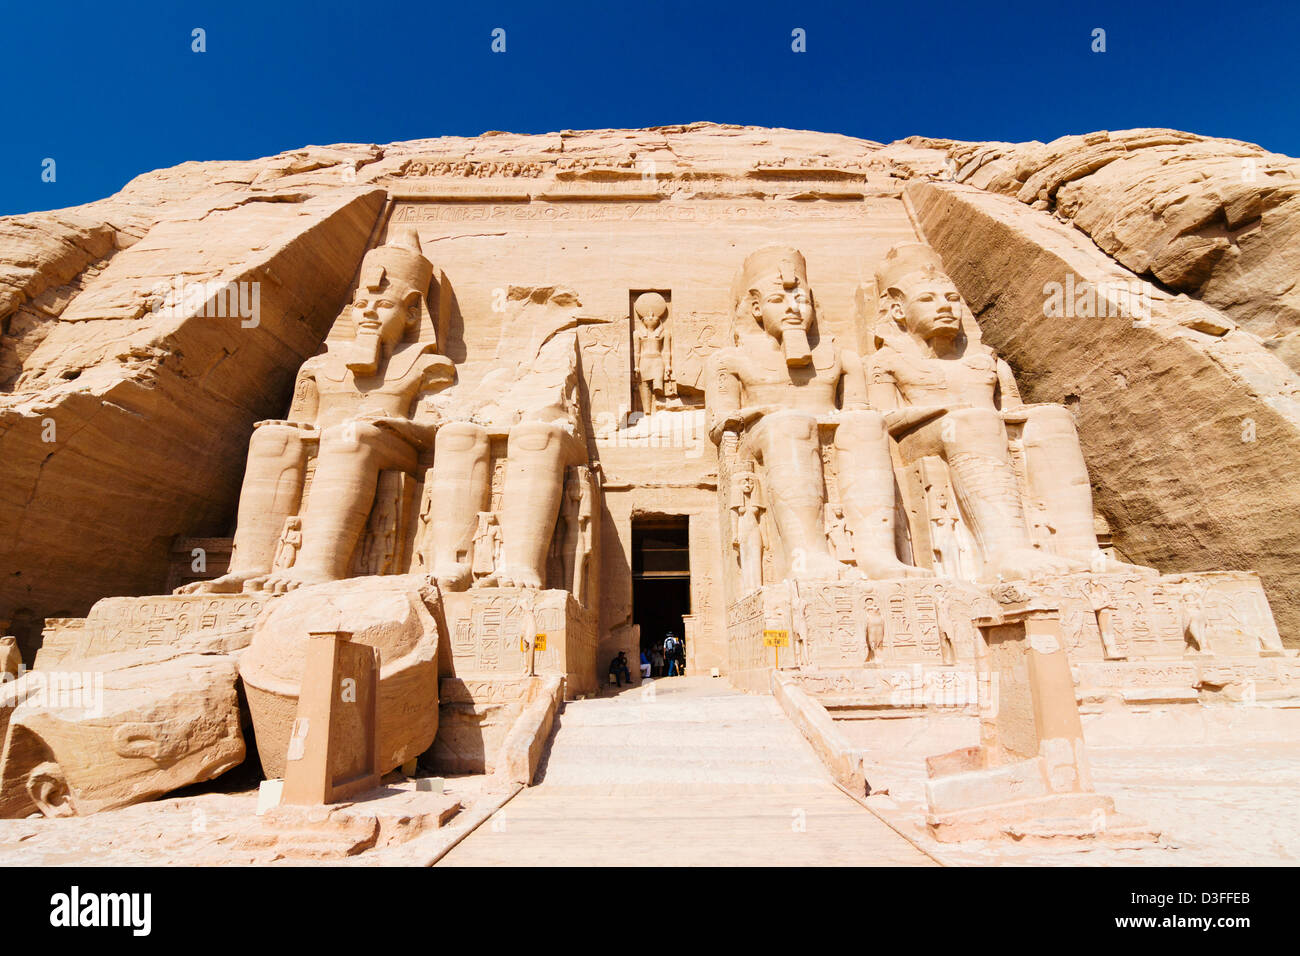 Abu Simbel, Great Temple of Ramses II. Egypt Stock Photo